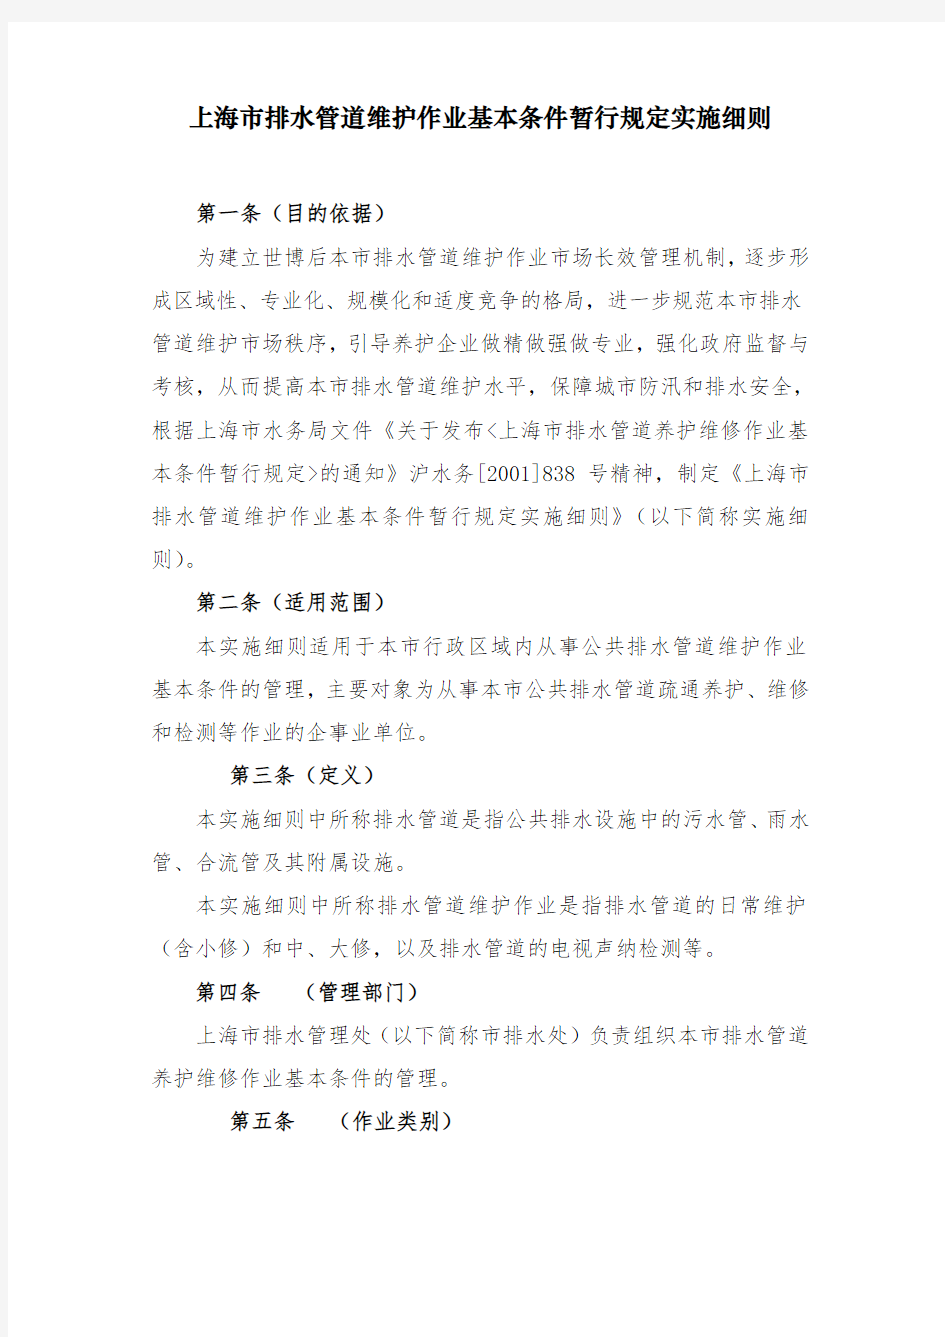 上海市排水管道维护作业基本条件暂行规定实施细则-上海排水管理处